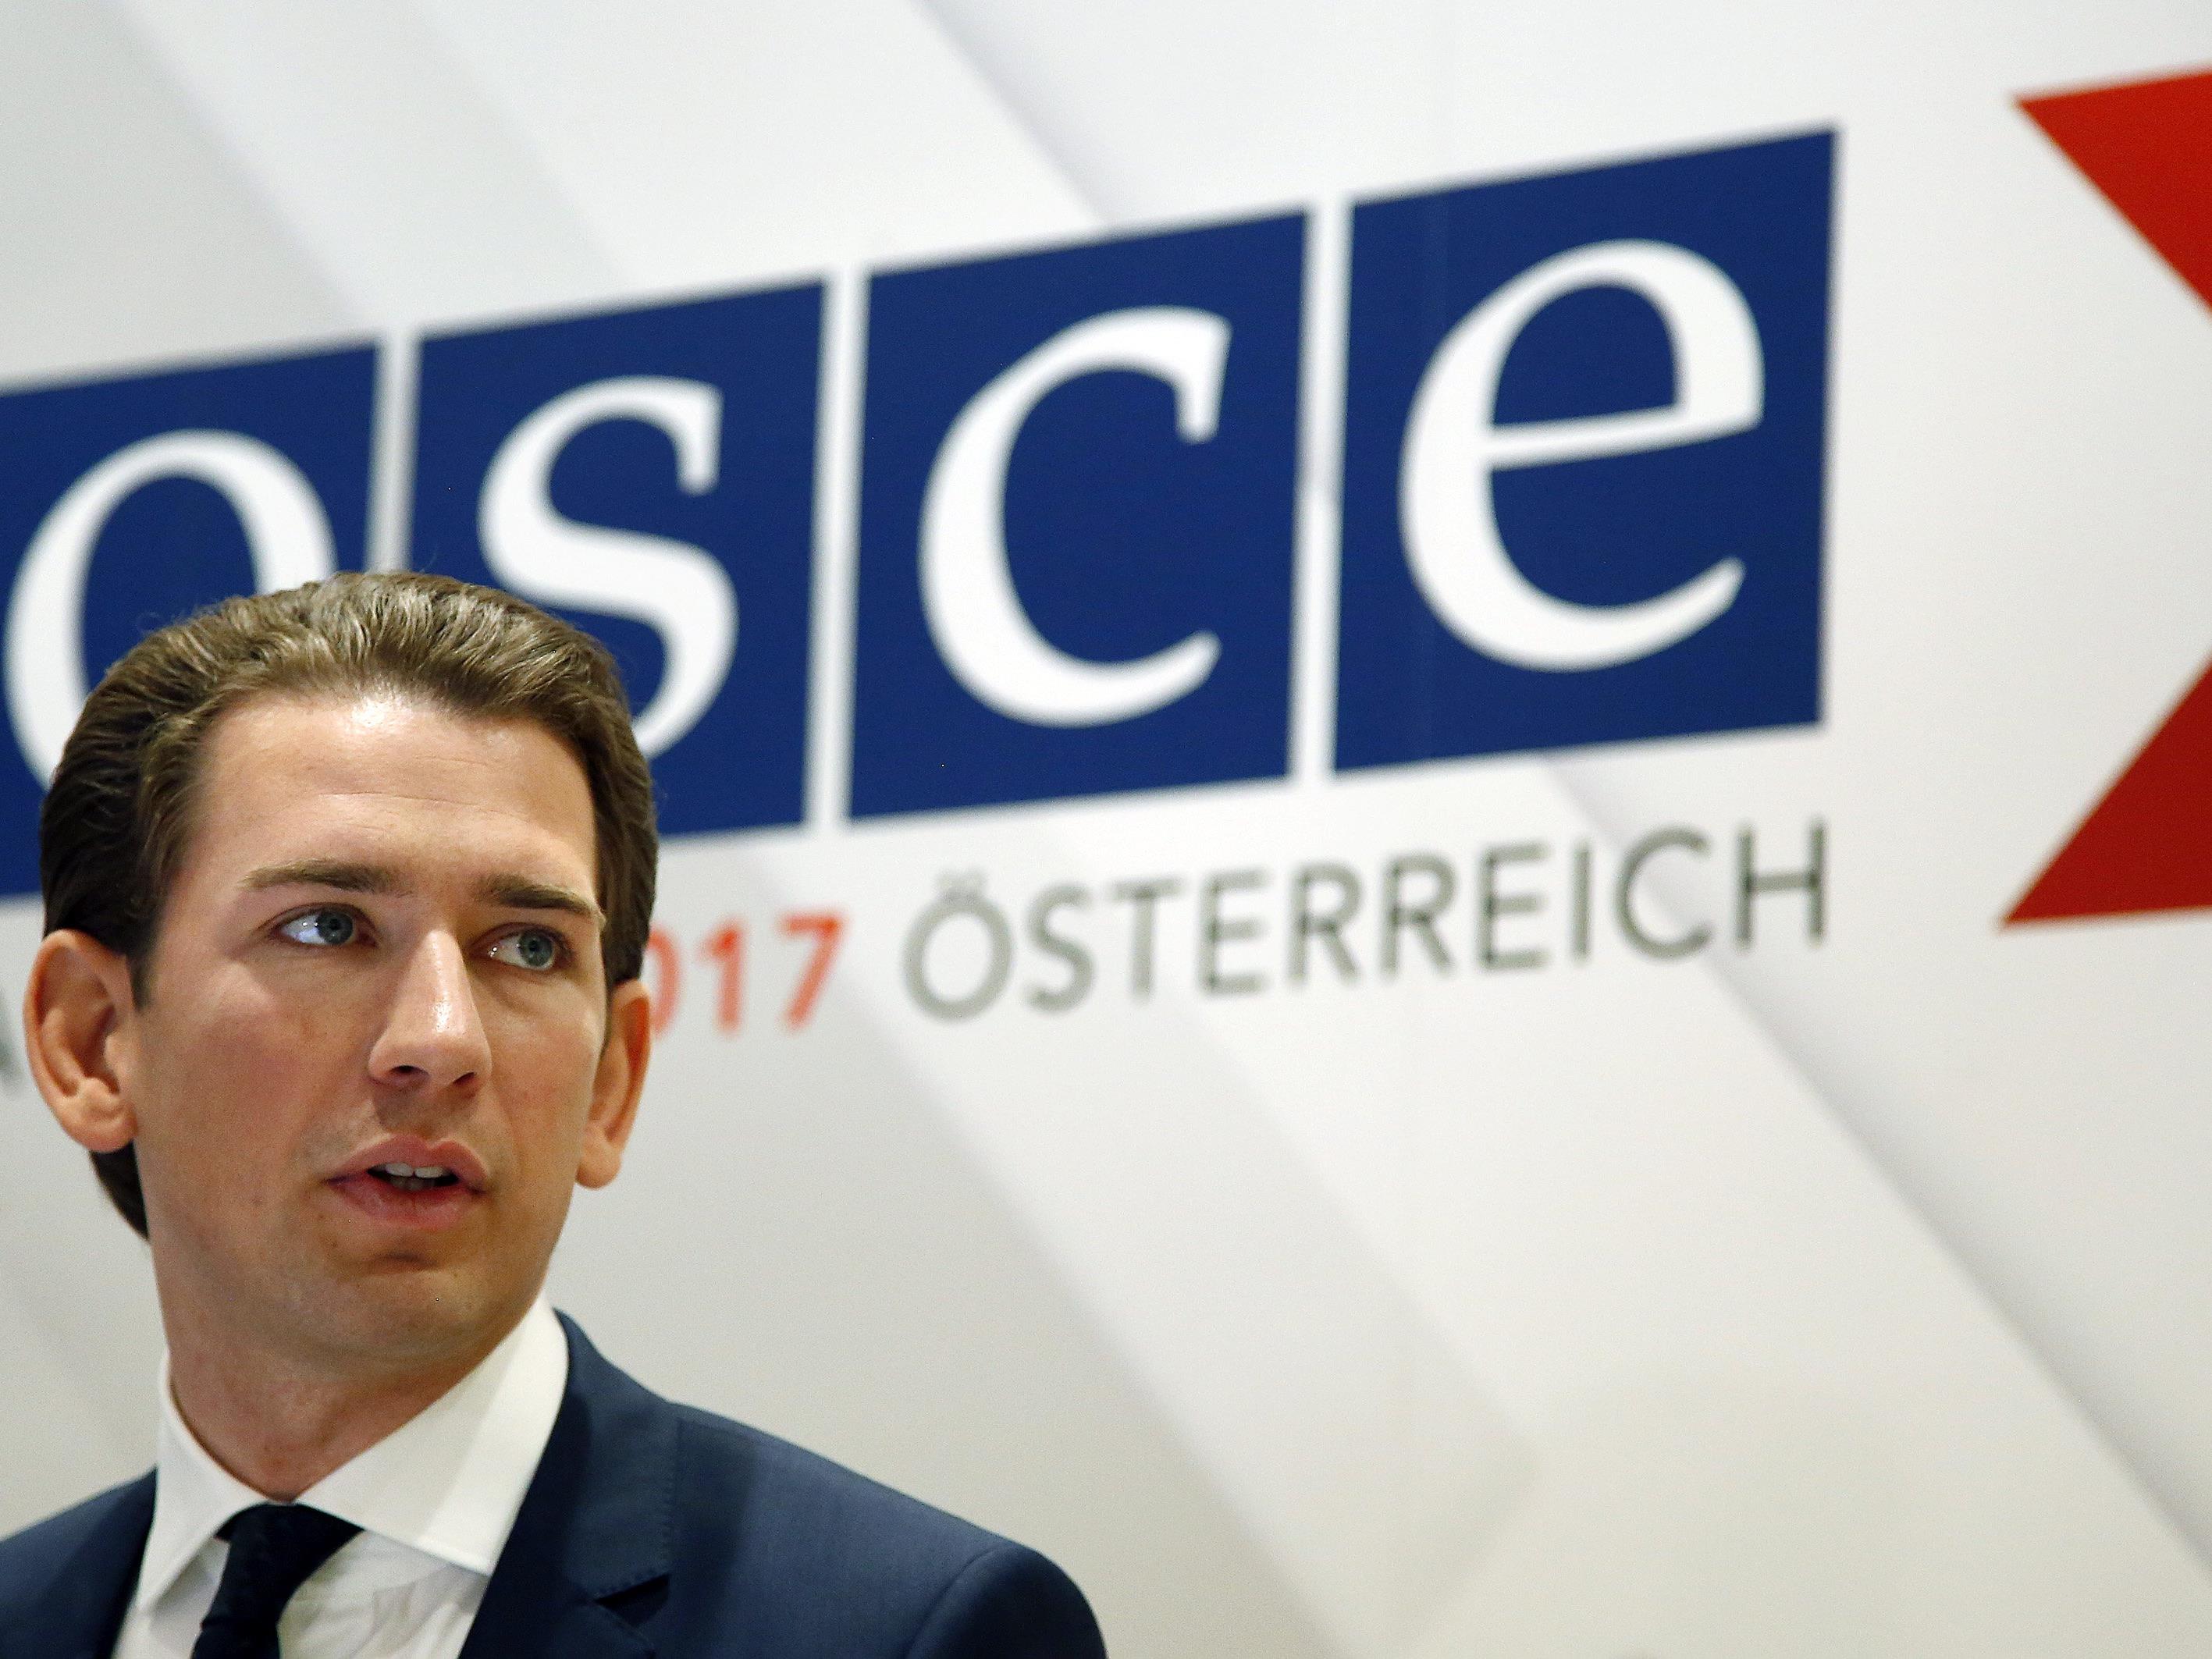 Außenminister Kurz bei einer OSCE-Konferenz gegen Terrorismus in Wien